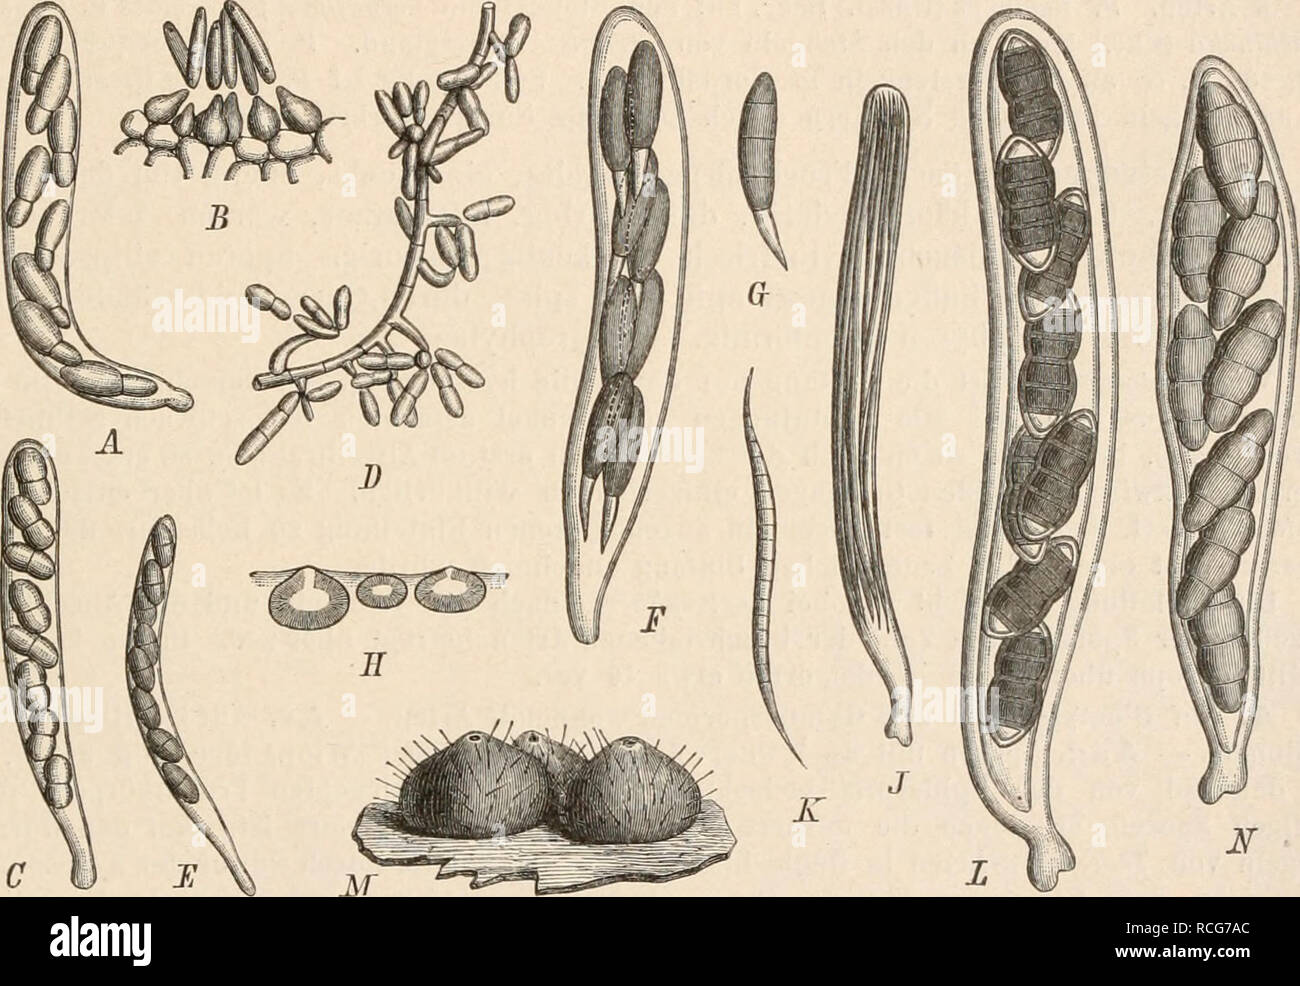 . Die Natürlichen Pflanzenfamilien nebst ihren Gattungen und wichtigeren Arten, insbesondere den Nutzpflanzen, unter Mitwirkung zahlreicher hervorragender Fachgelehrten begründet. Botany. Sphaeriales. (Lindau. 433 zweigen gebildet werden. Außerdem sollen noch kleine Pykniden dazu gehören, die sich auf dem Substrat meist in Begleitung der Schlauchform finden. D. acerina Rehm (Fig. 268 E) auf Zweigen von Acer campeslre und Prunus spinosa in Europa. Auf den Mycelien entstanden in der Cultur nach 4 Monaten kleine Pykniden mit hakenförmig gekrümmten, lzelligen, hyalinen Sporen. D. socialis Sacc. an Stock Photo